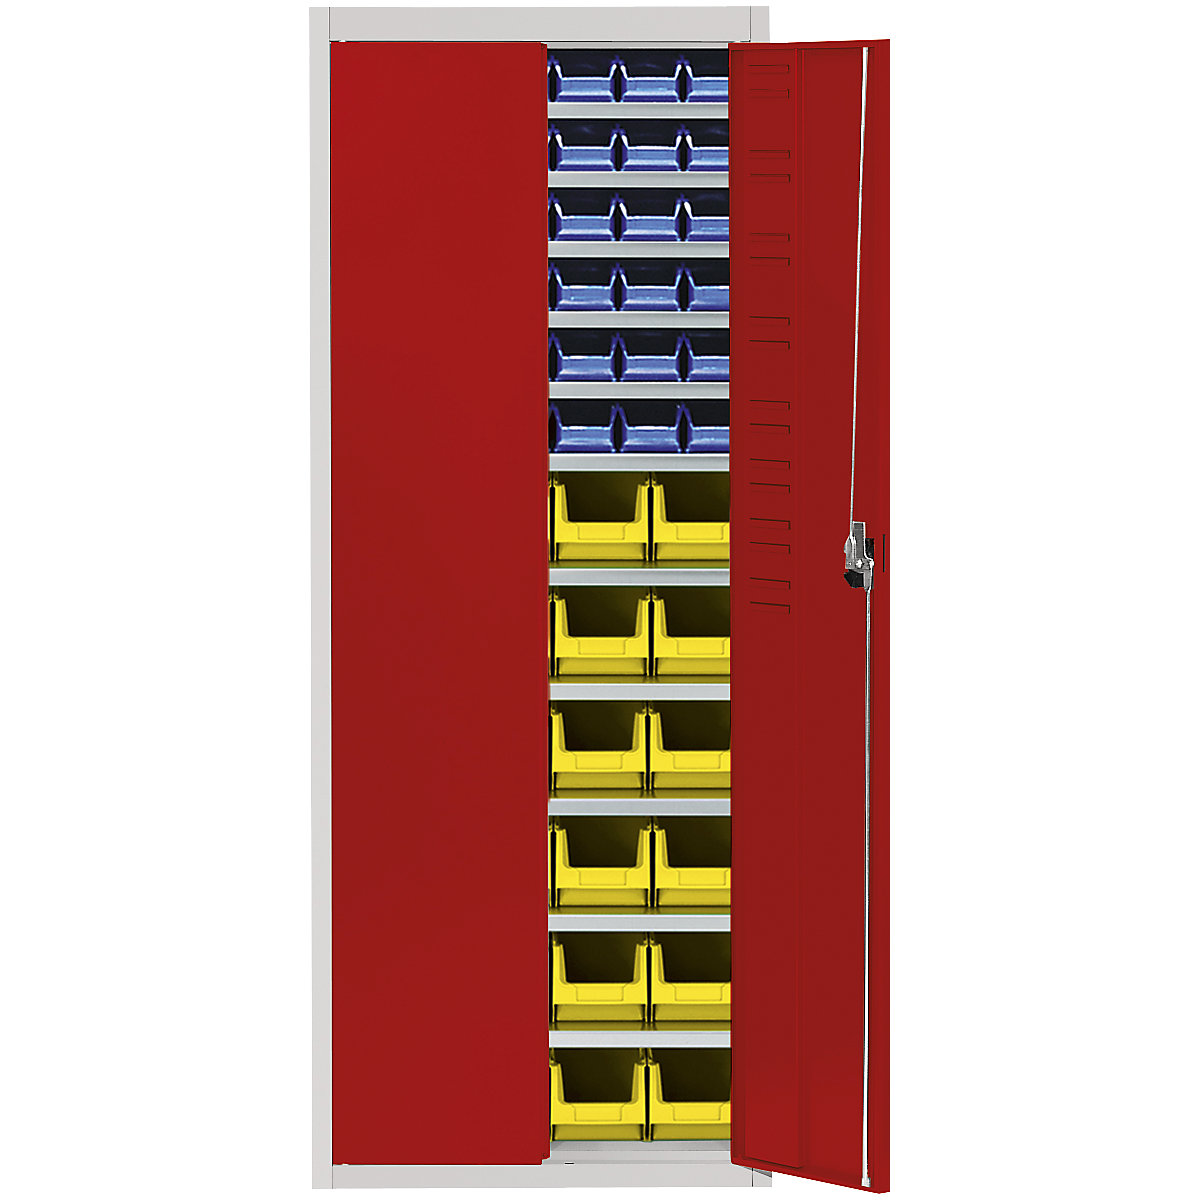 Magazijnkast met magazijnbakken – mauser, h x b x d = 1740 x 680 x 280 mm, tweekleurig, kastframe grijs, deuren rood, 60 bakken-16